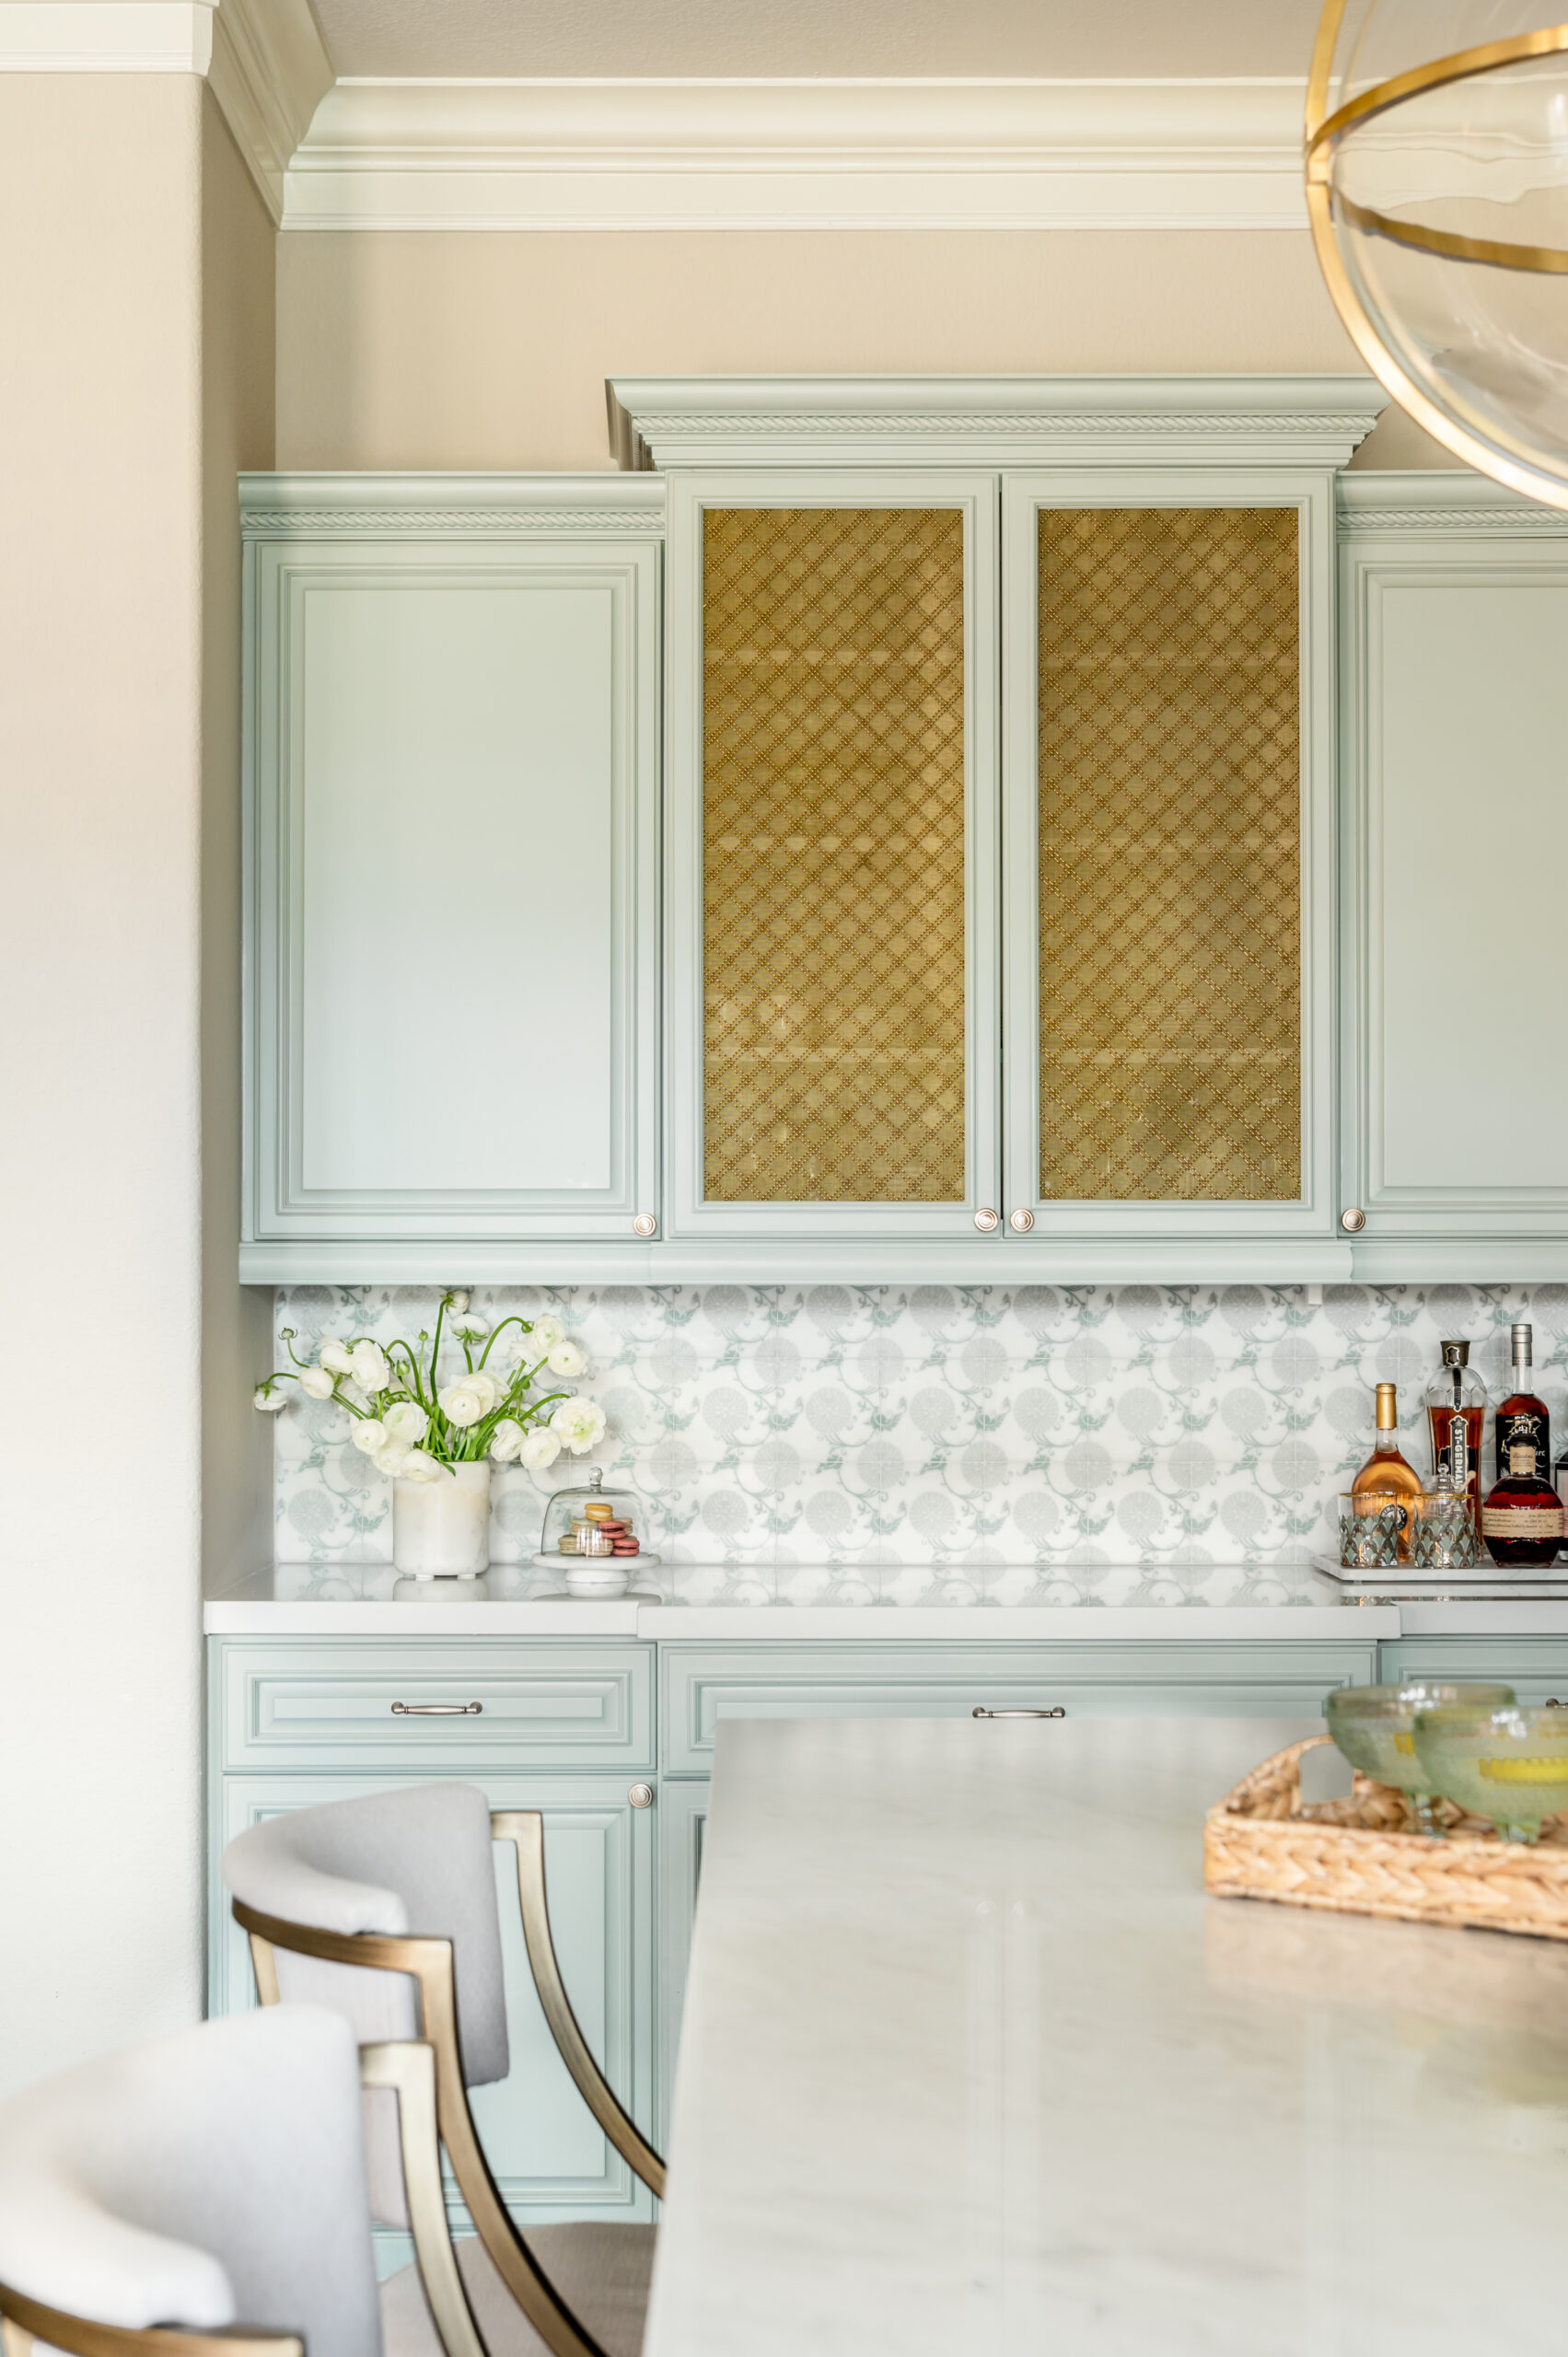 Houston Interior Designer, Sarah Becker’s kitchen interior design photoshoot